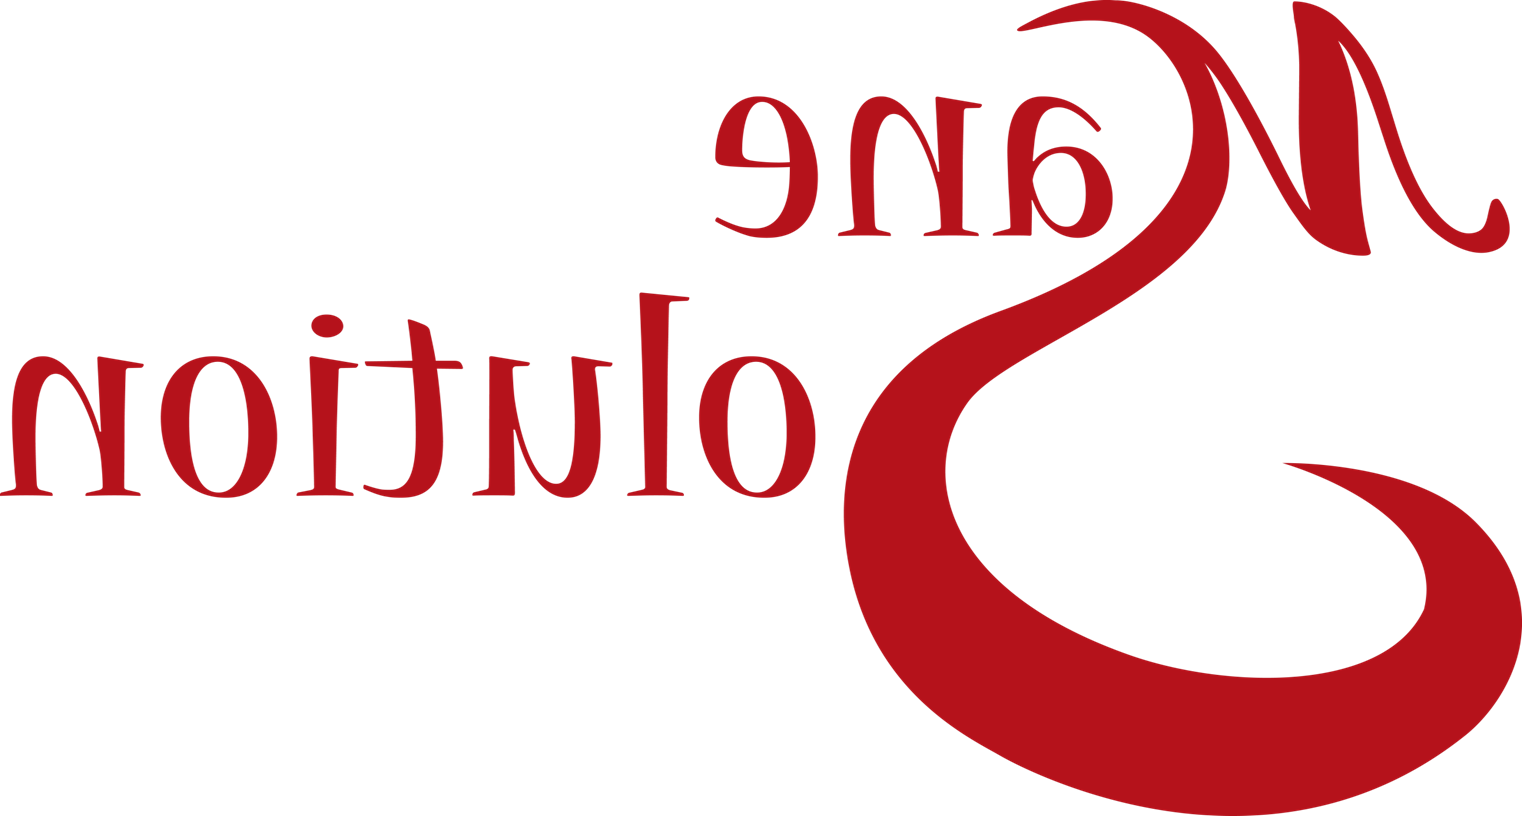 logo for mane solution